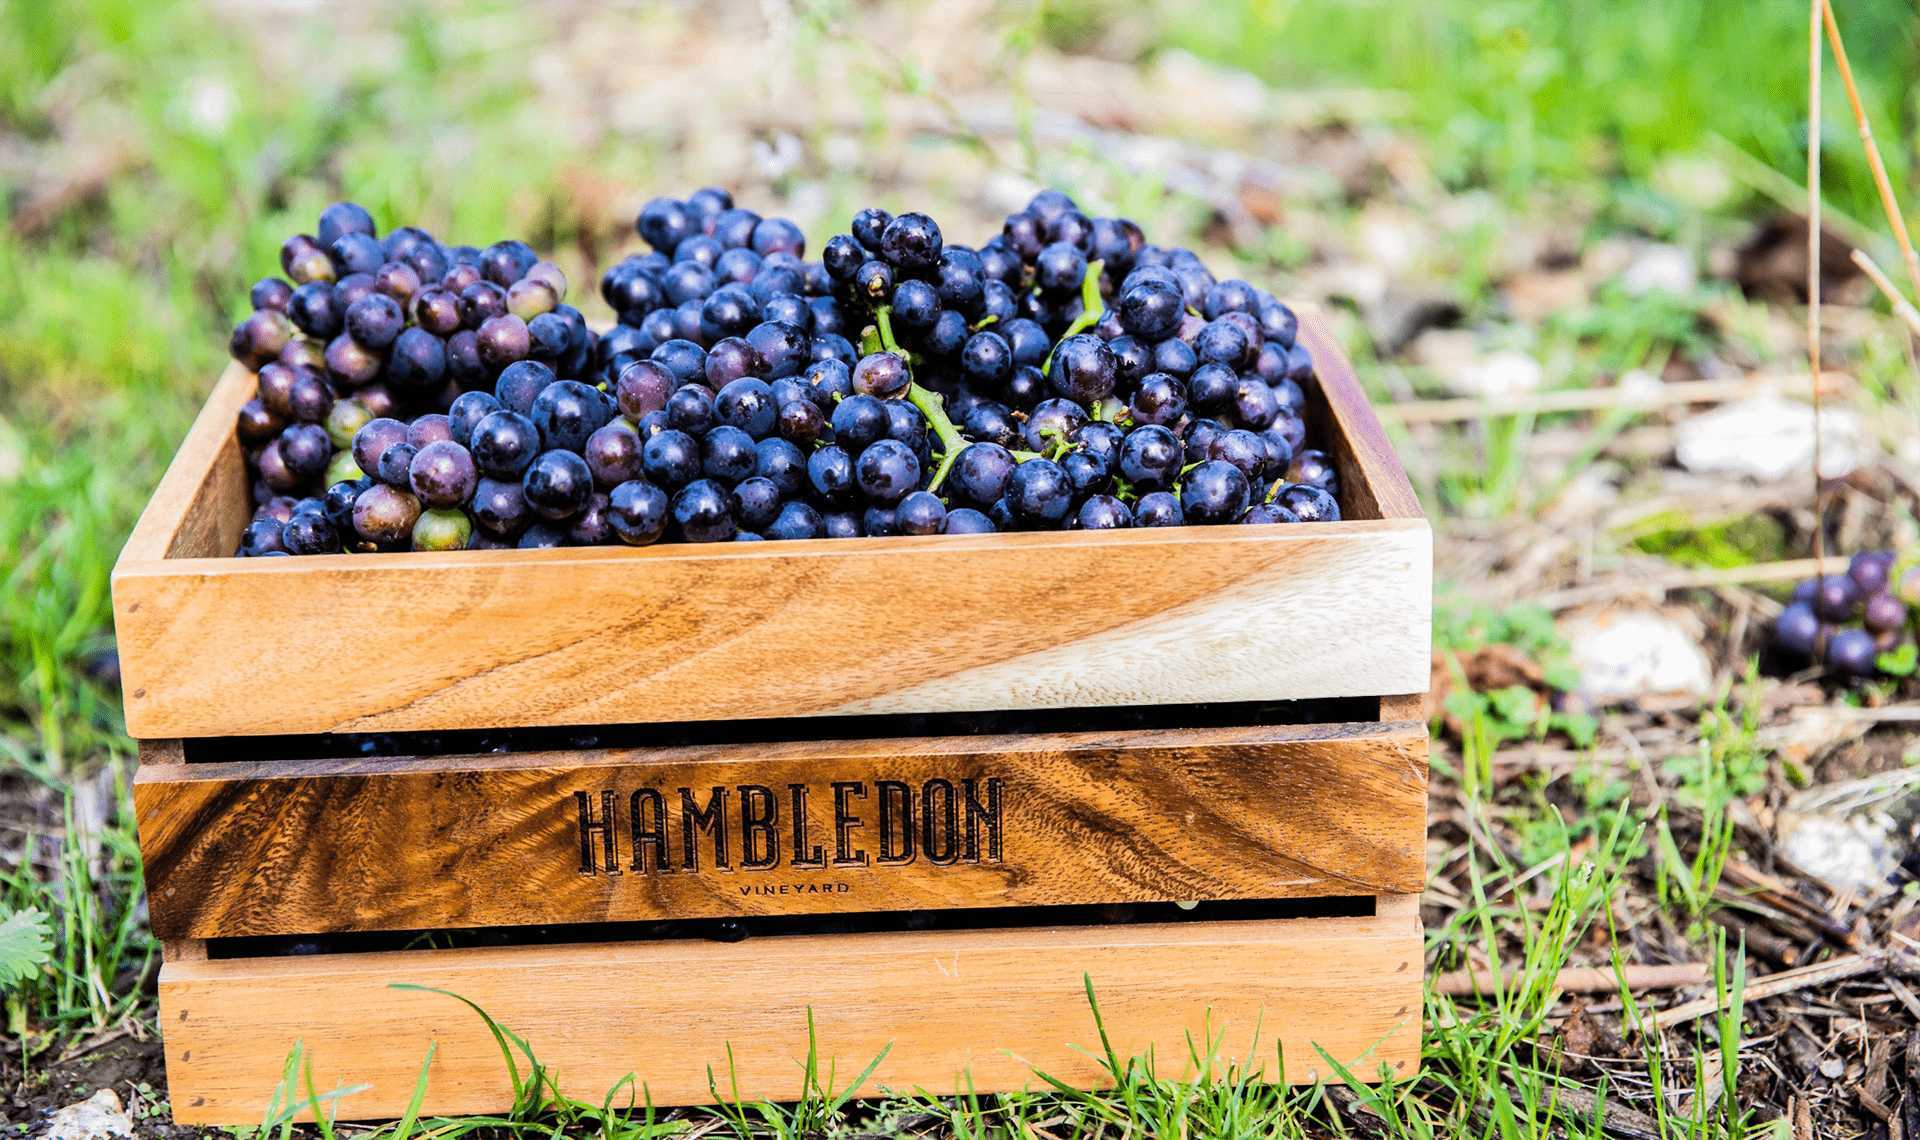 Hambledon Vineyard pinot noir grapes in a crate